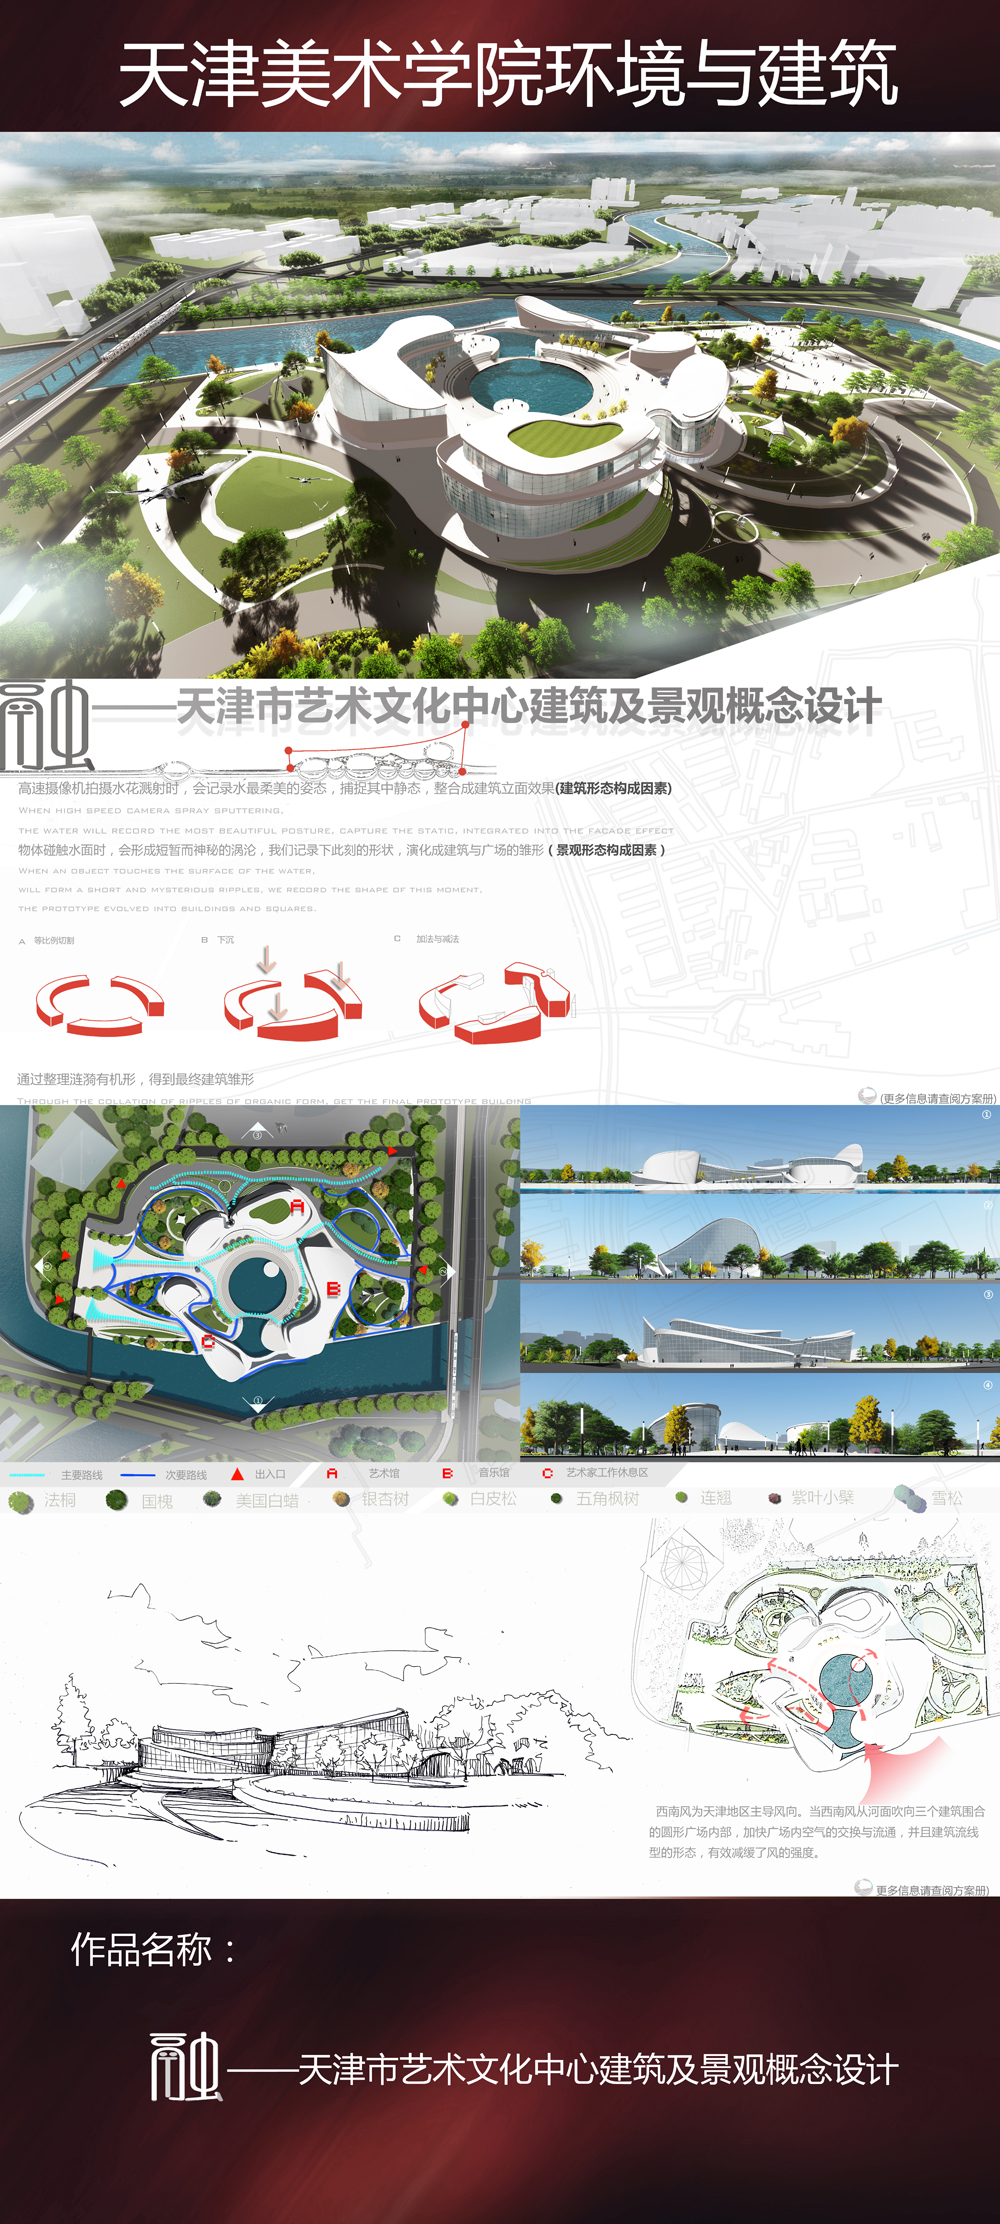 《融》—天津市艺术文化中心建筑及景观概念设计